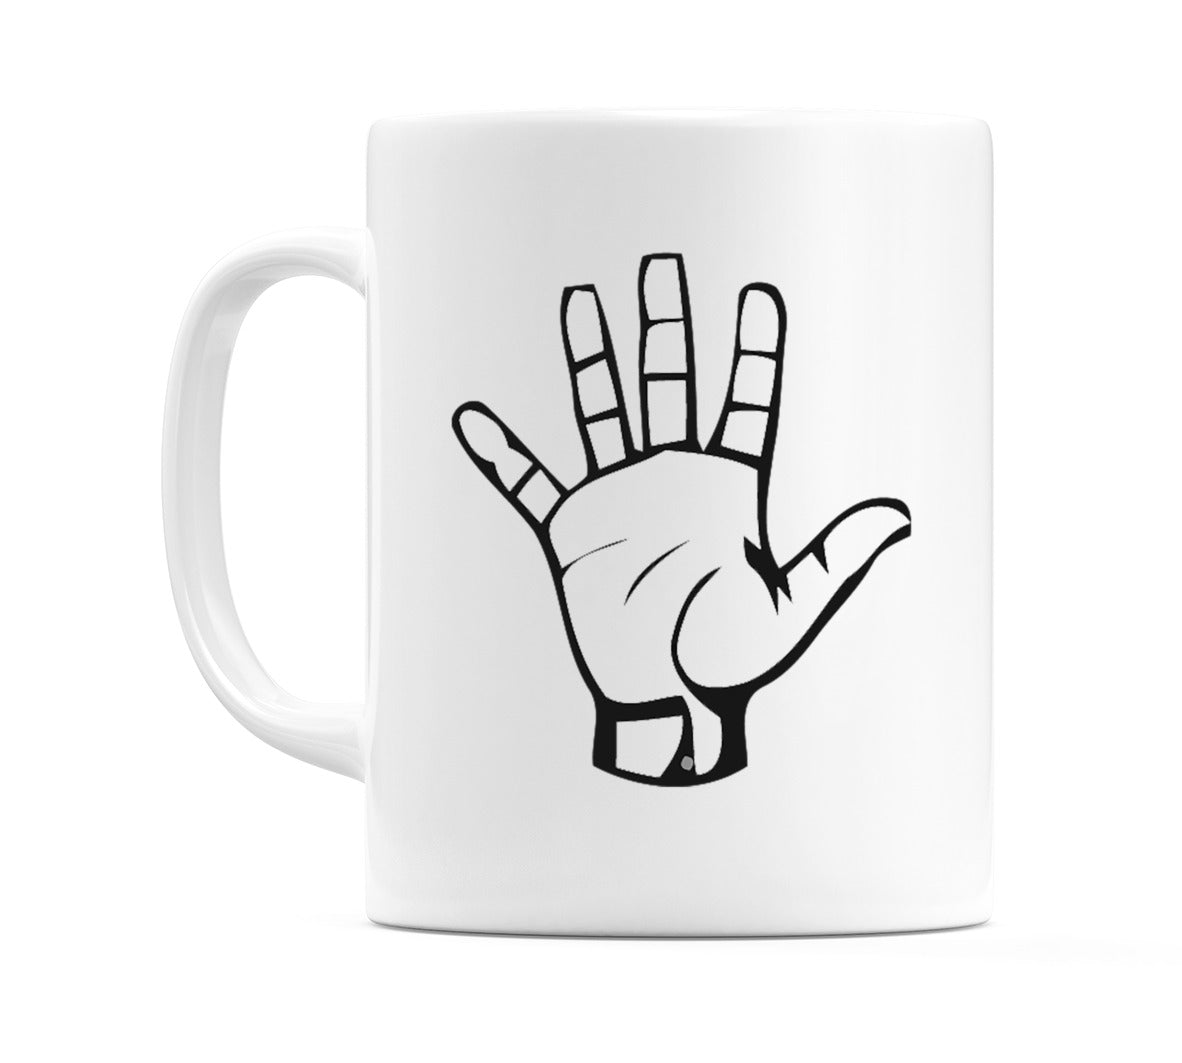 US Sign Language Number 5 Mug